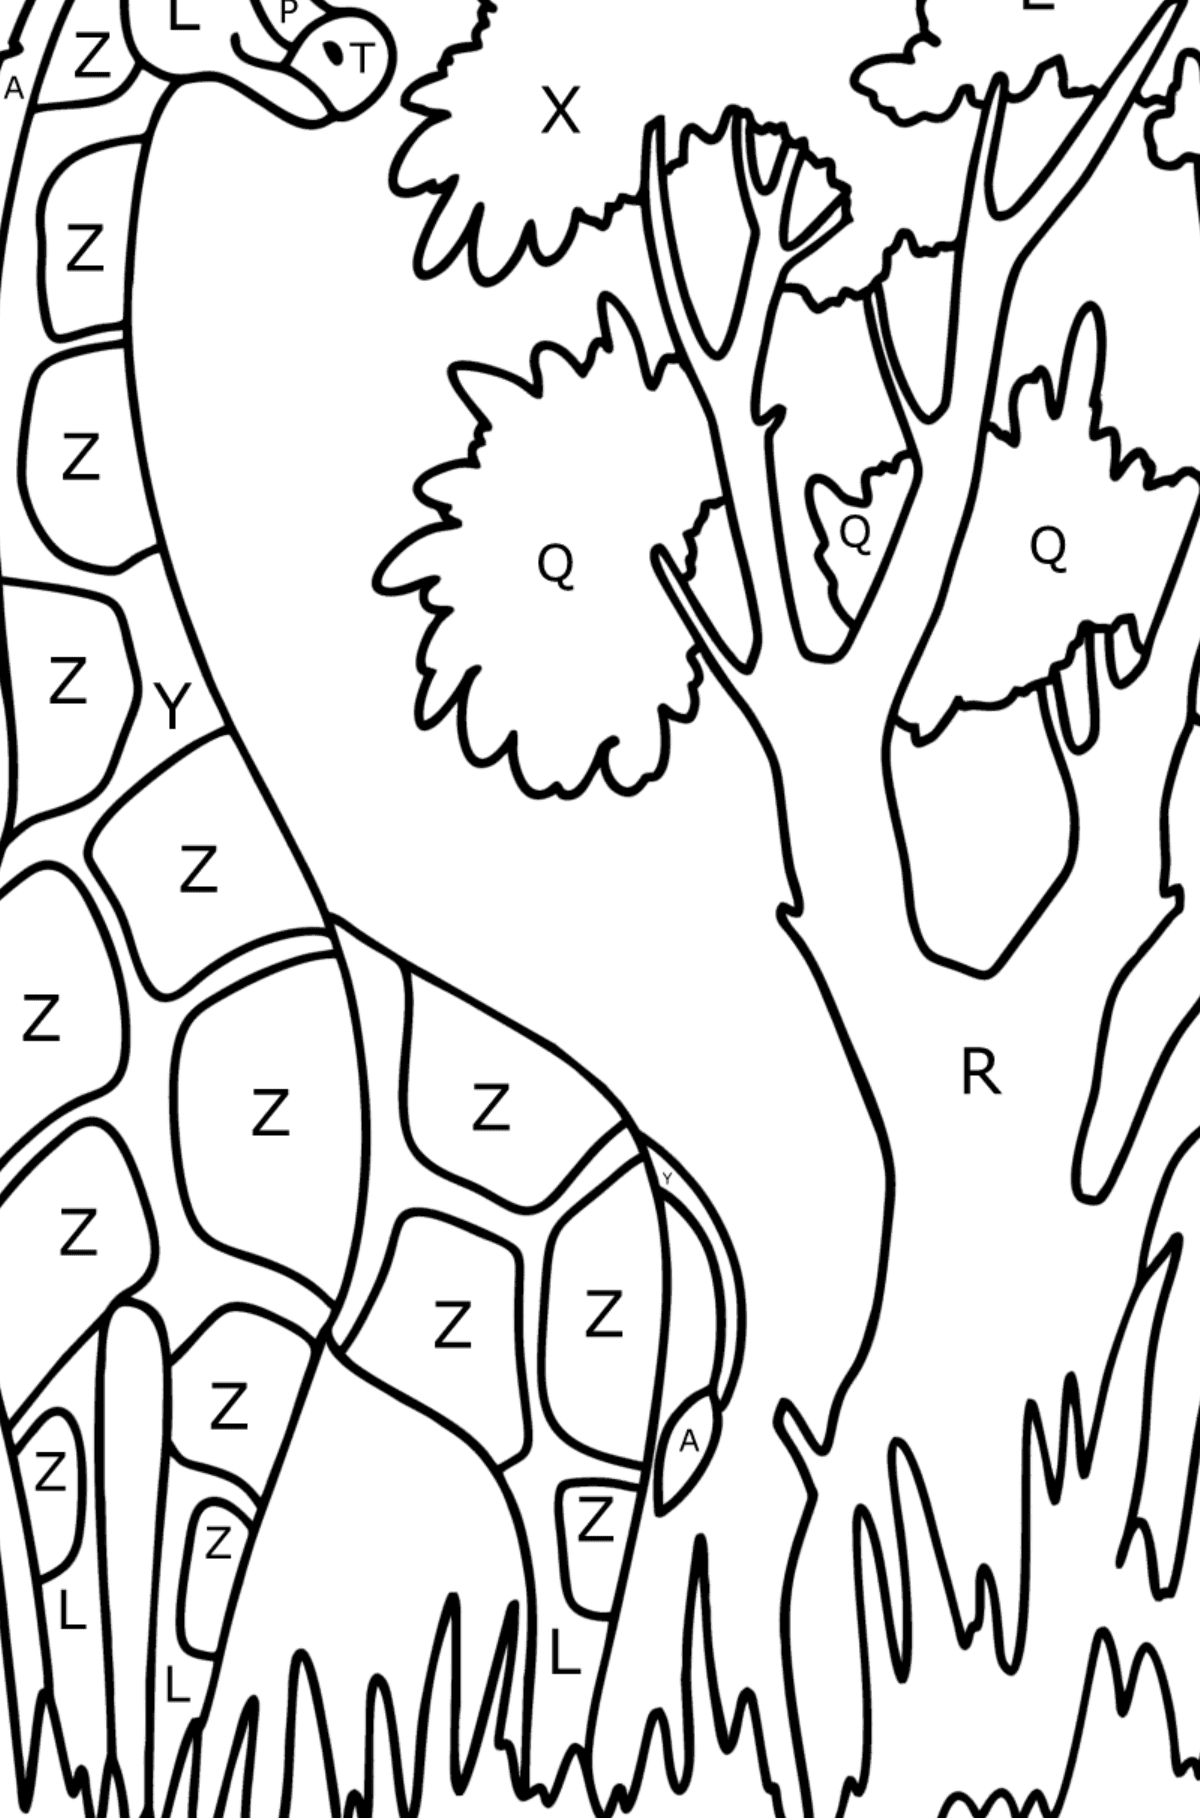 Giraf in de natuur kleurplaat - Kleuren met letters voor kinderen